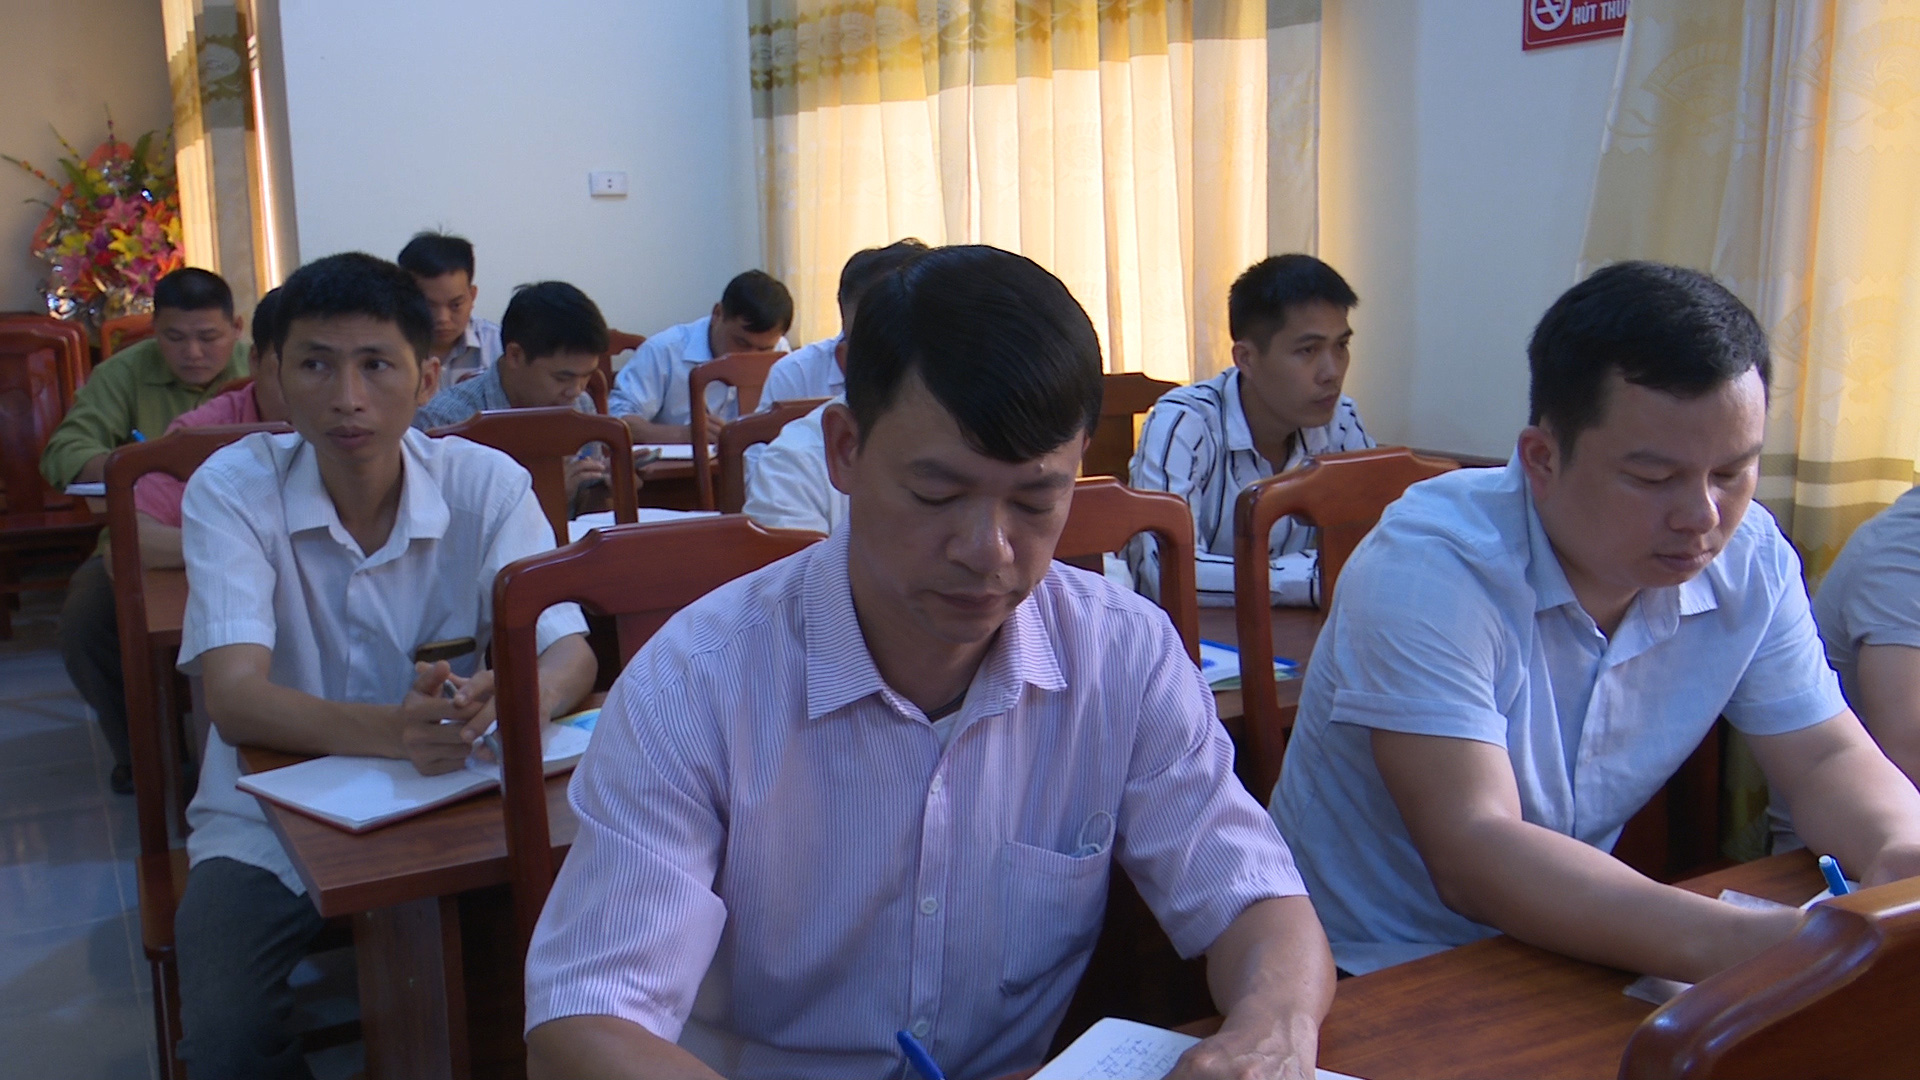 Lạng Sơn: Chú trọng tập huấn nghiệp vụ cho cán bộ Hội Nông dân các cấp - Ảnh 1.